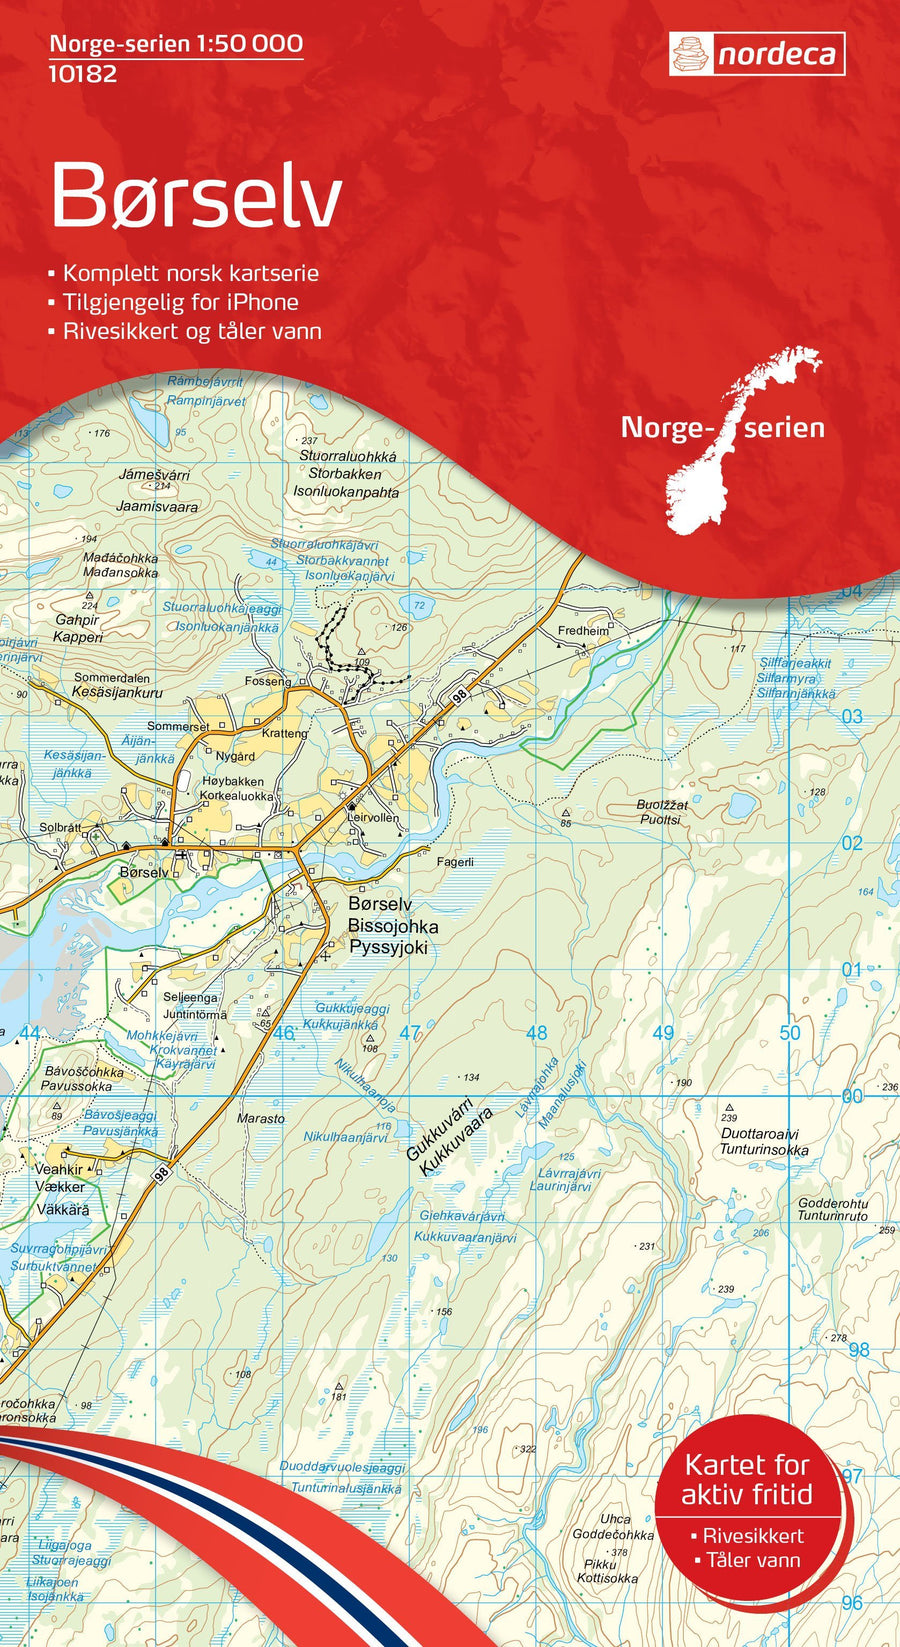 Carte de randonnée n° 10182 - Borselv (Norvège) | Nordeca - Norge-serien carte pliée Nordeca 